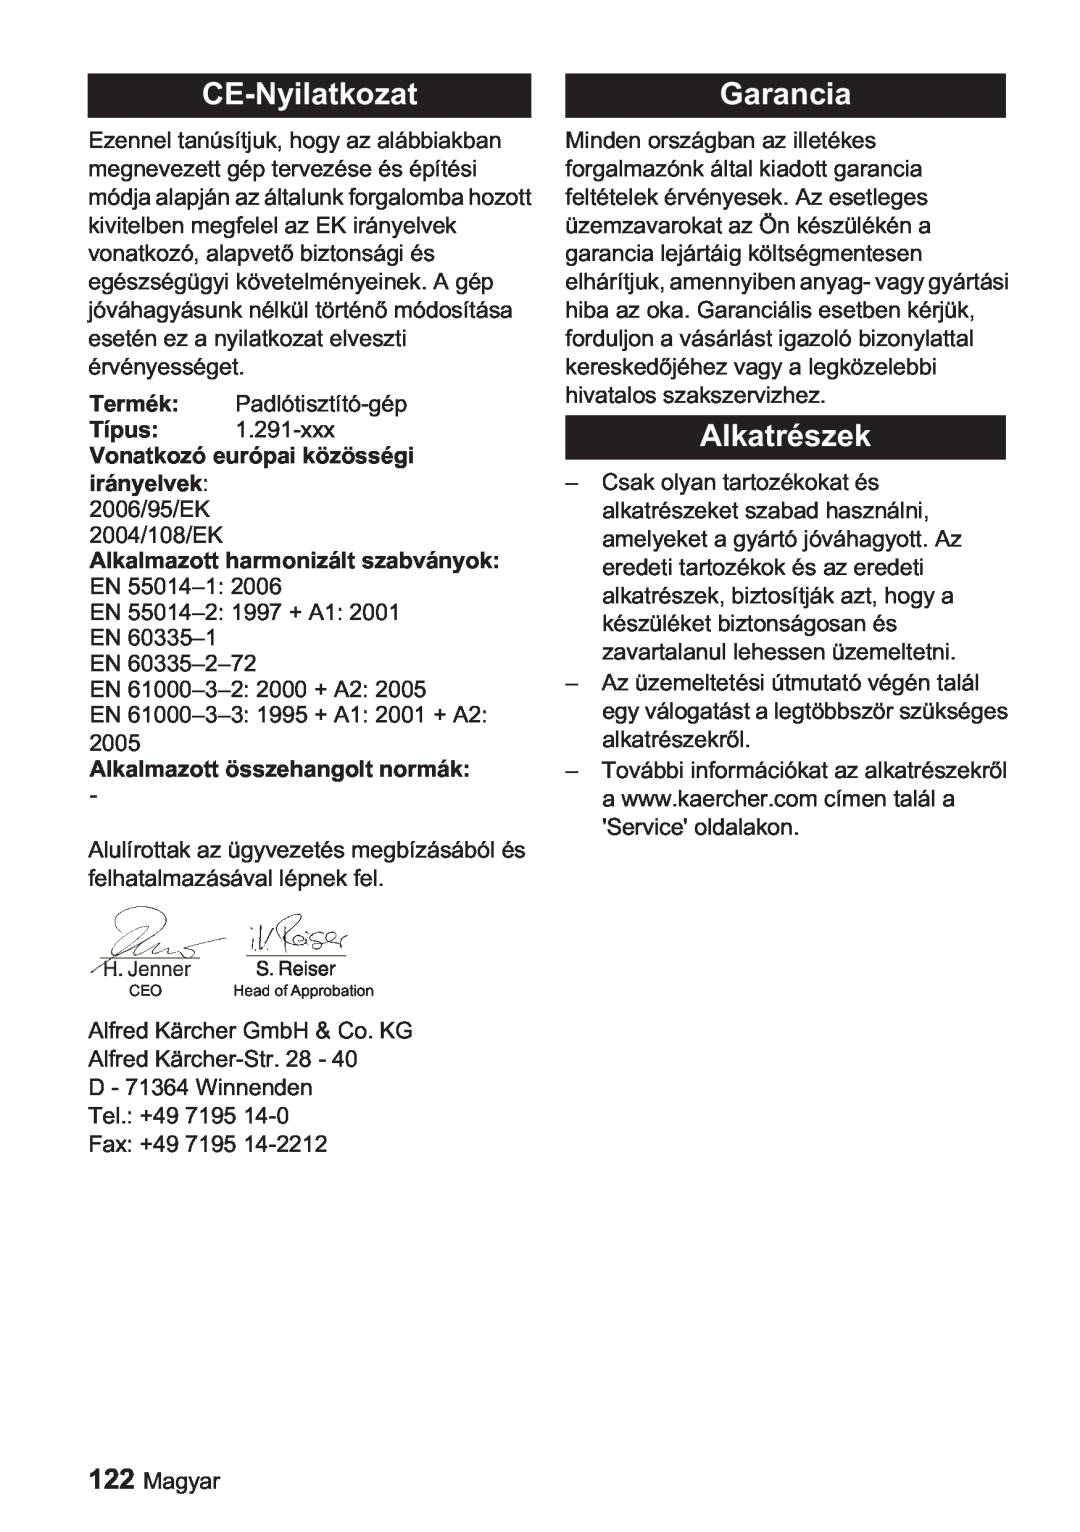 Karcher BDP 1500 manual CE-NyilatkozatGarancia, Alkatrészek, Vonatkozó európai közösségi irányelvek 2006/95/EK 2004/108/EK 